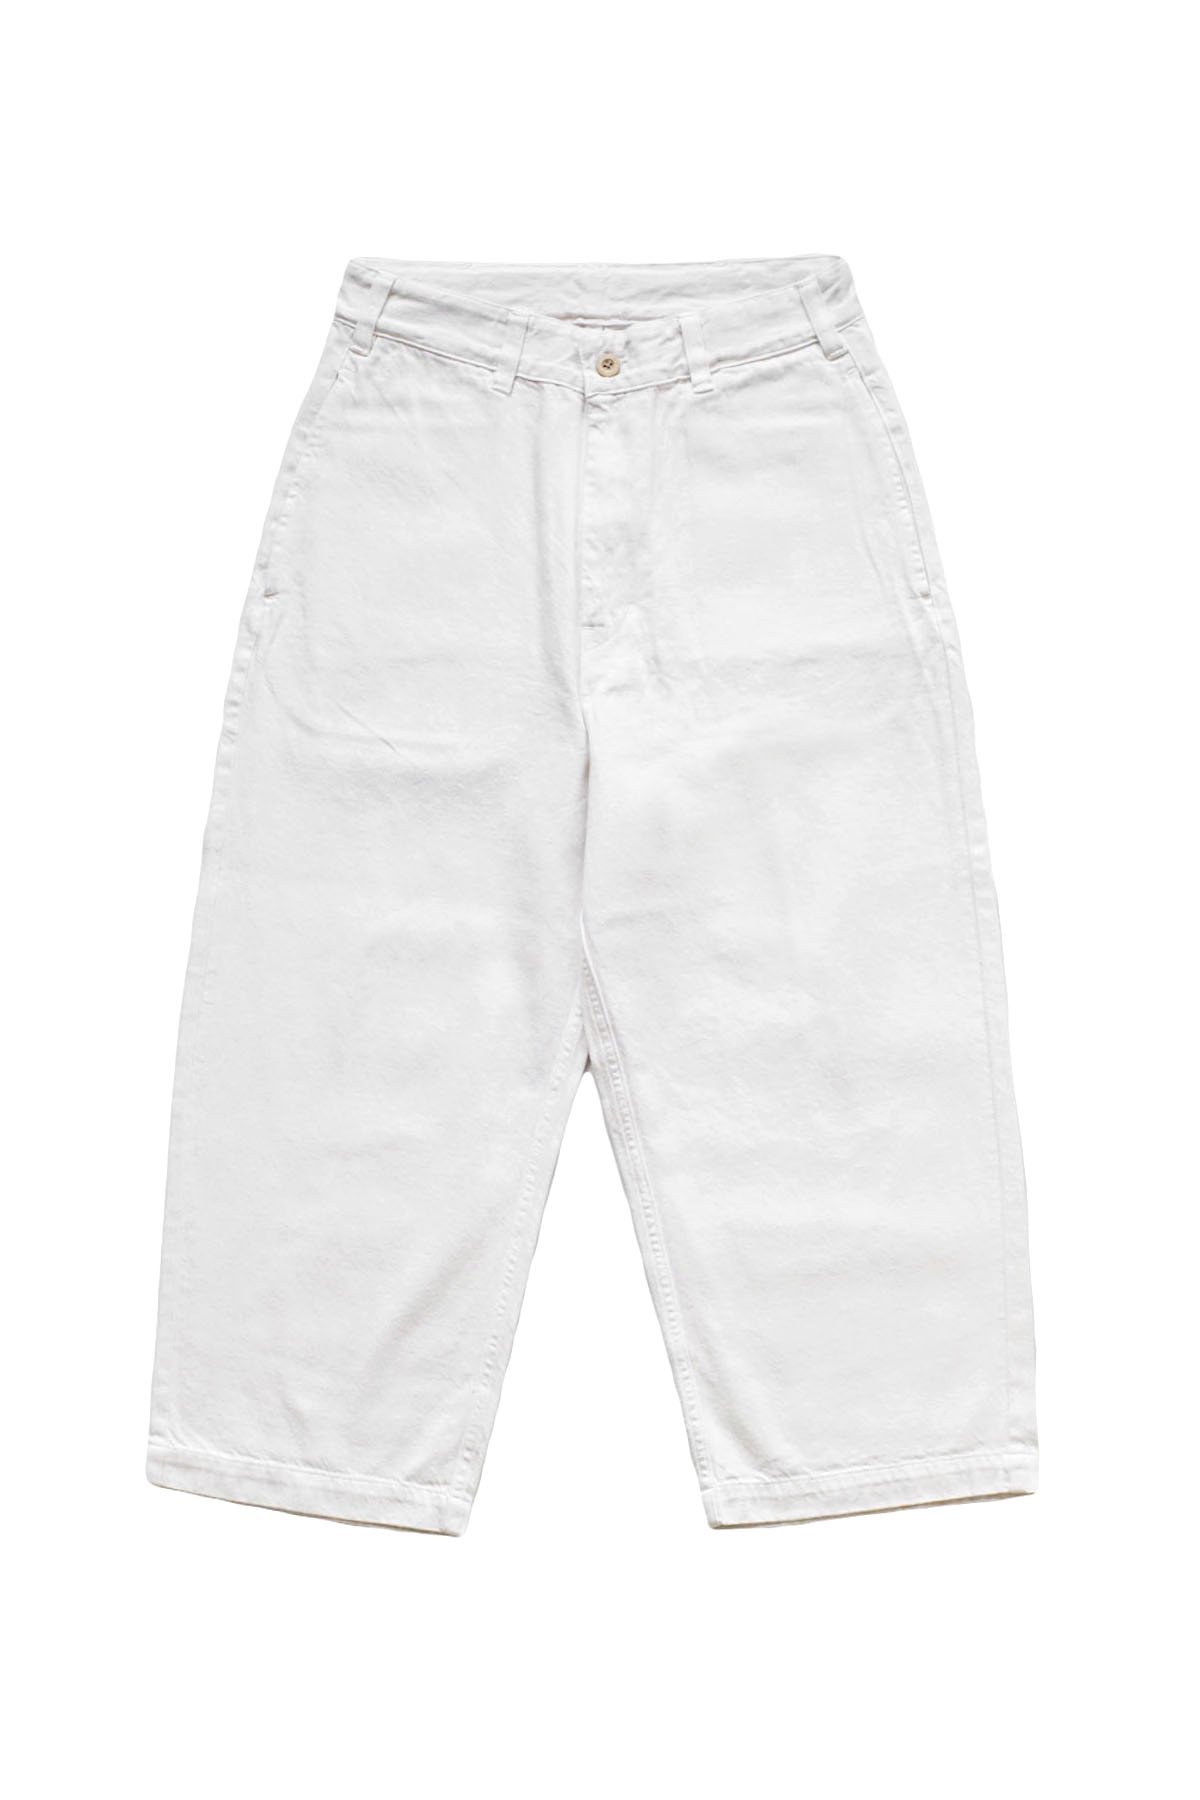 porter classic summer white pants特筆するダメージなどないです